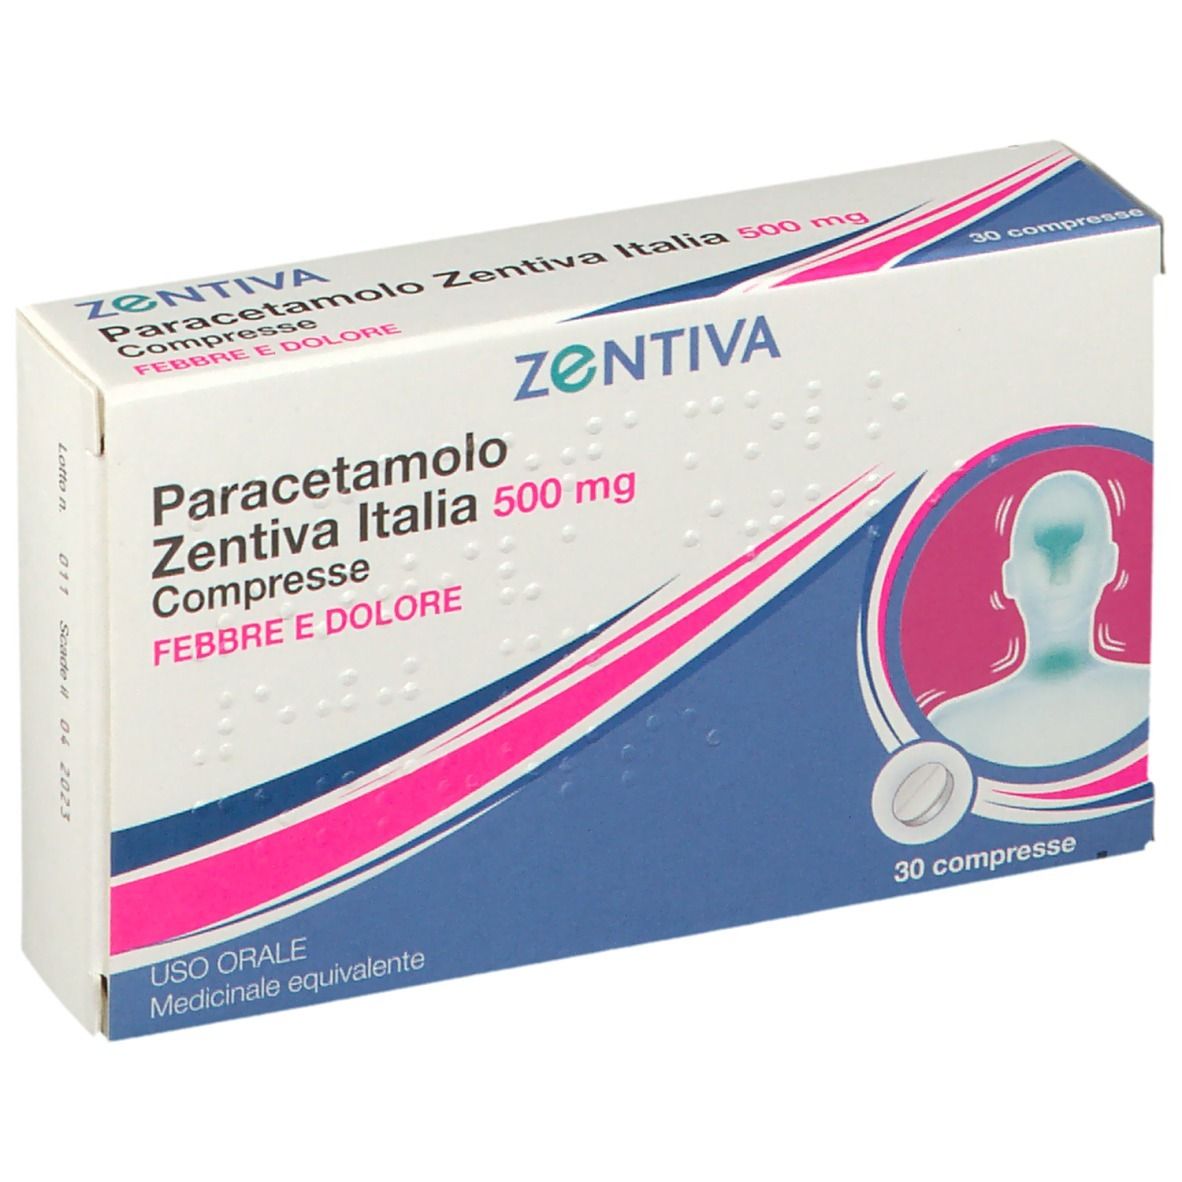 Image of Paracetamolo Zentiva Italia 500 mg Febbre e Dolori 30 Compresse